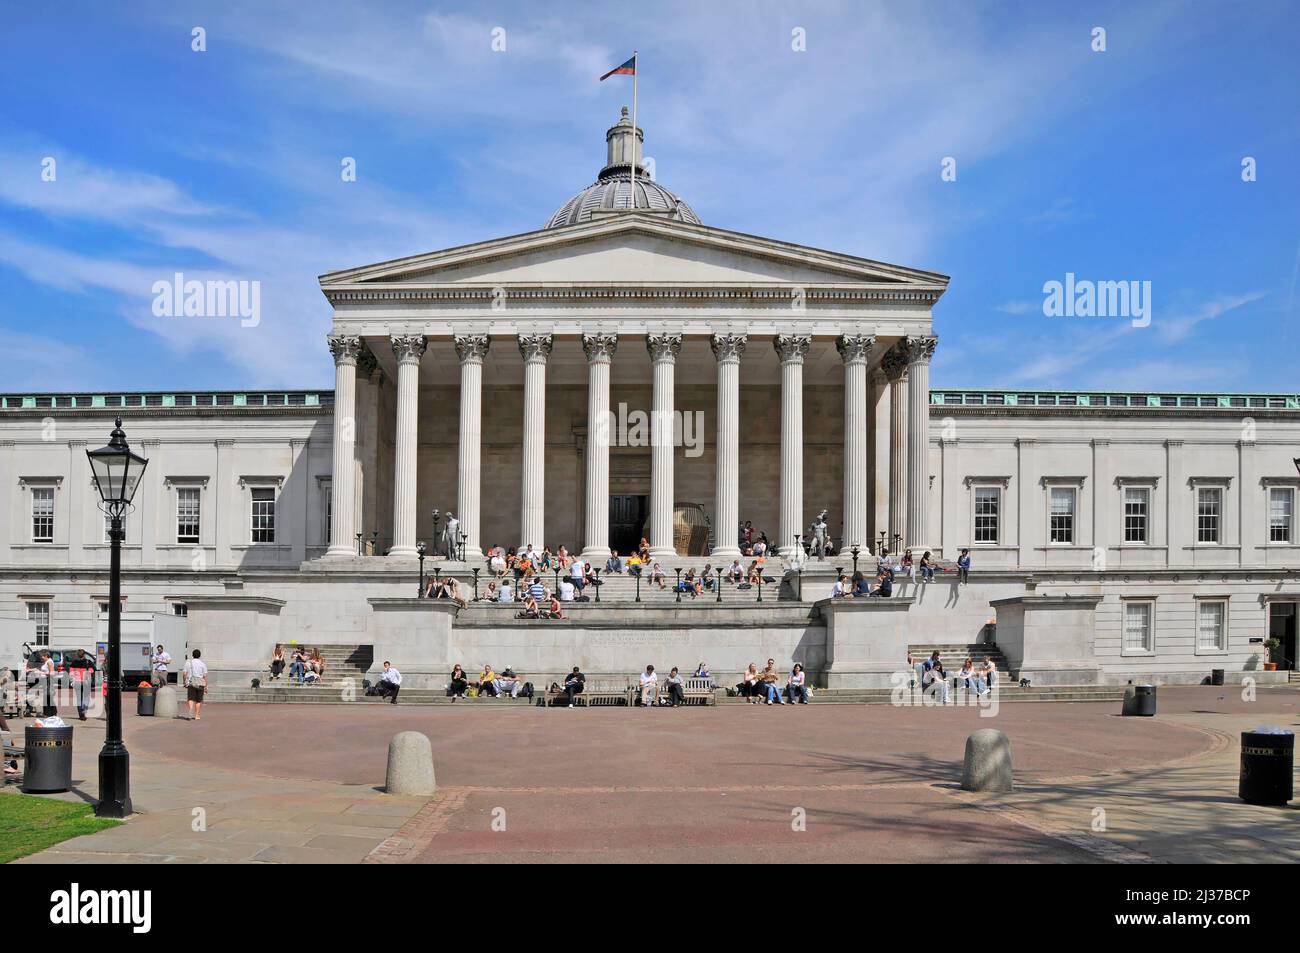 Gruppe von Studenten in der Ausbildung am historischen Wilkins Gebäude der UCL mit Säulengang Kolonnade auf dem Quad Campus University College London England Großbritannien Stockfoto